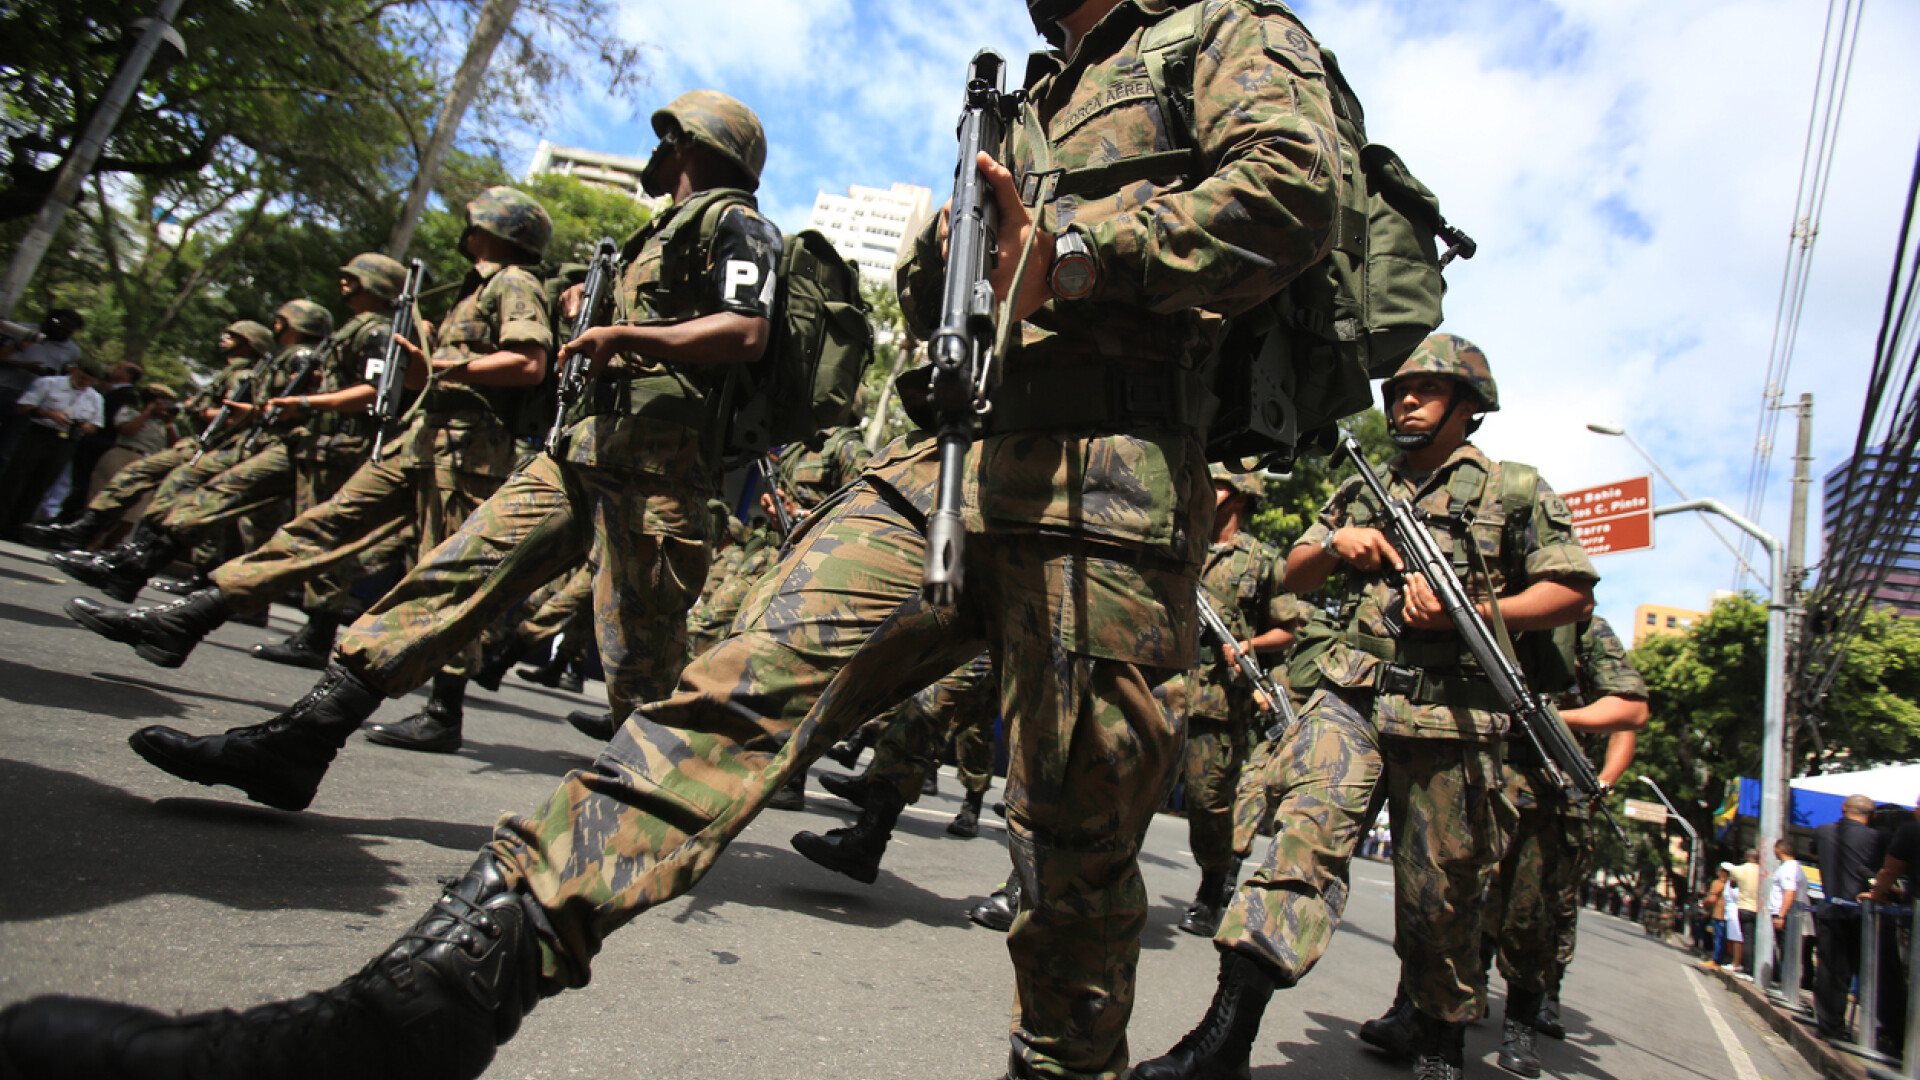 armata brazilia